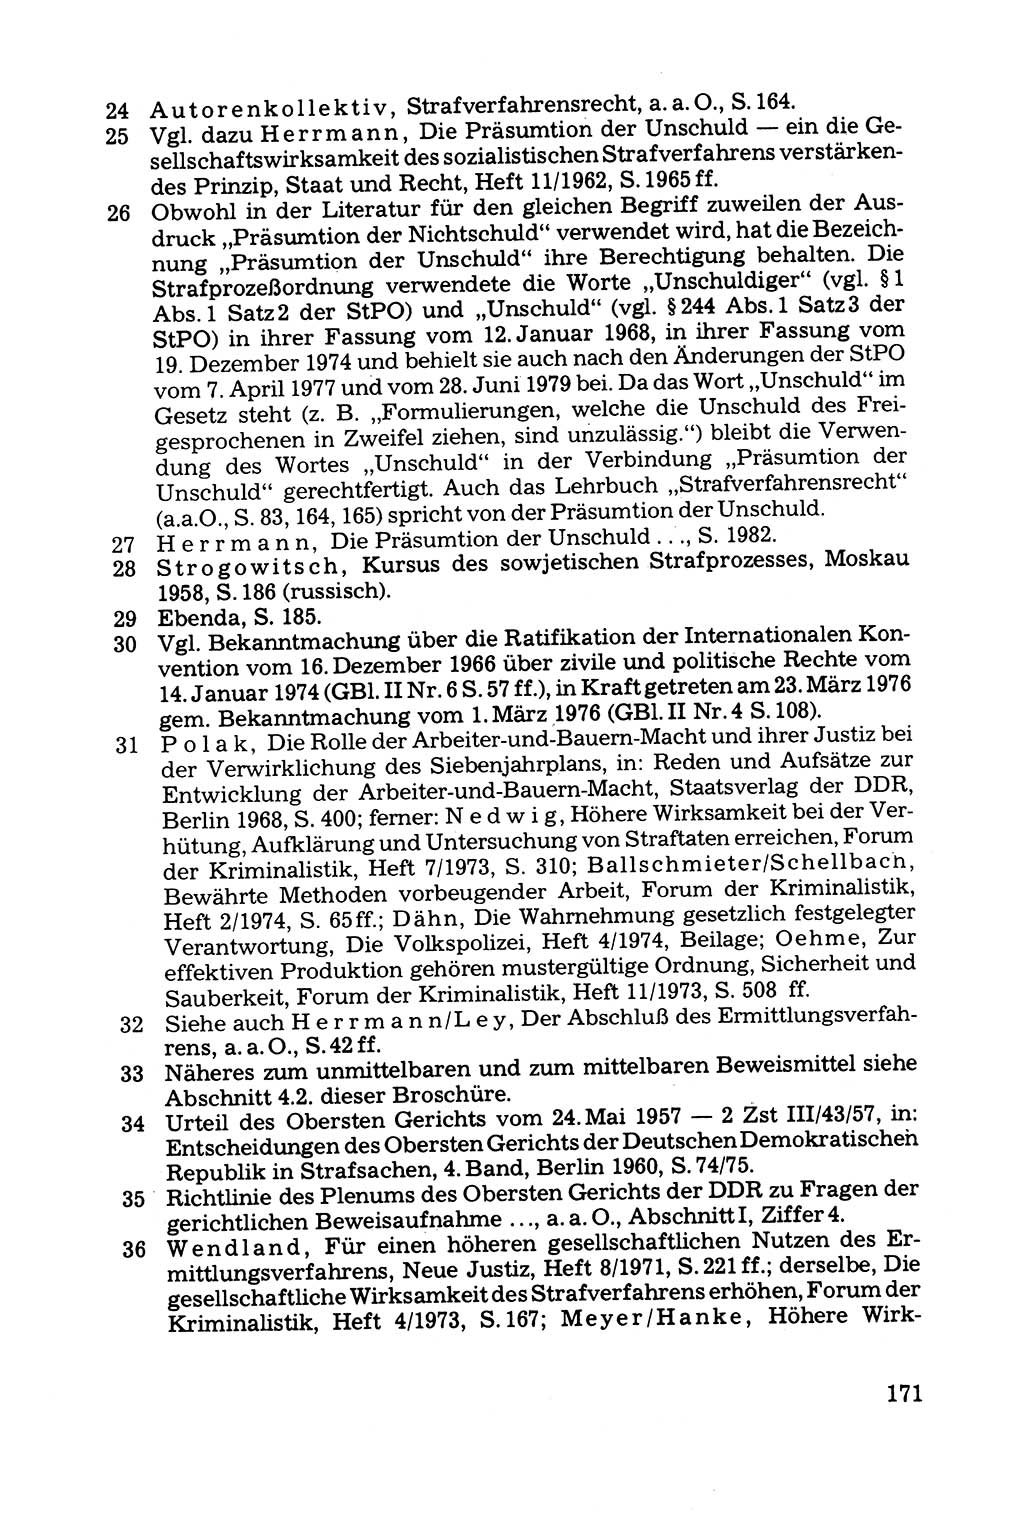 Grundfragen der Beweisführung im Ermittlungsverfahren [Deutsche Demokratische Republik (DDR)] 1980, Seite 171 (Bws.-Fhrg. EV DDR 1980, S. 171)